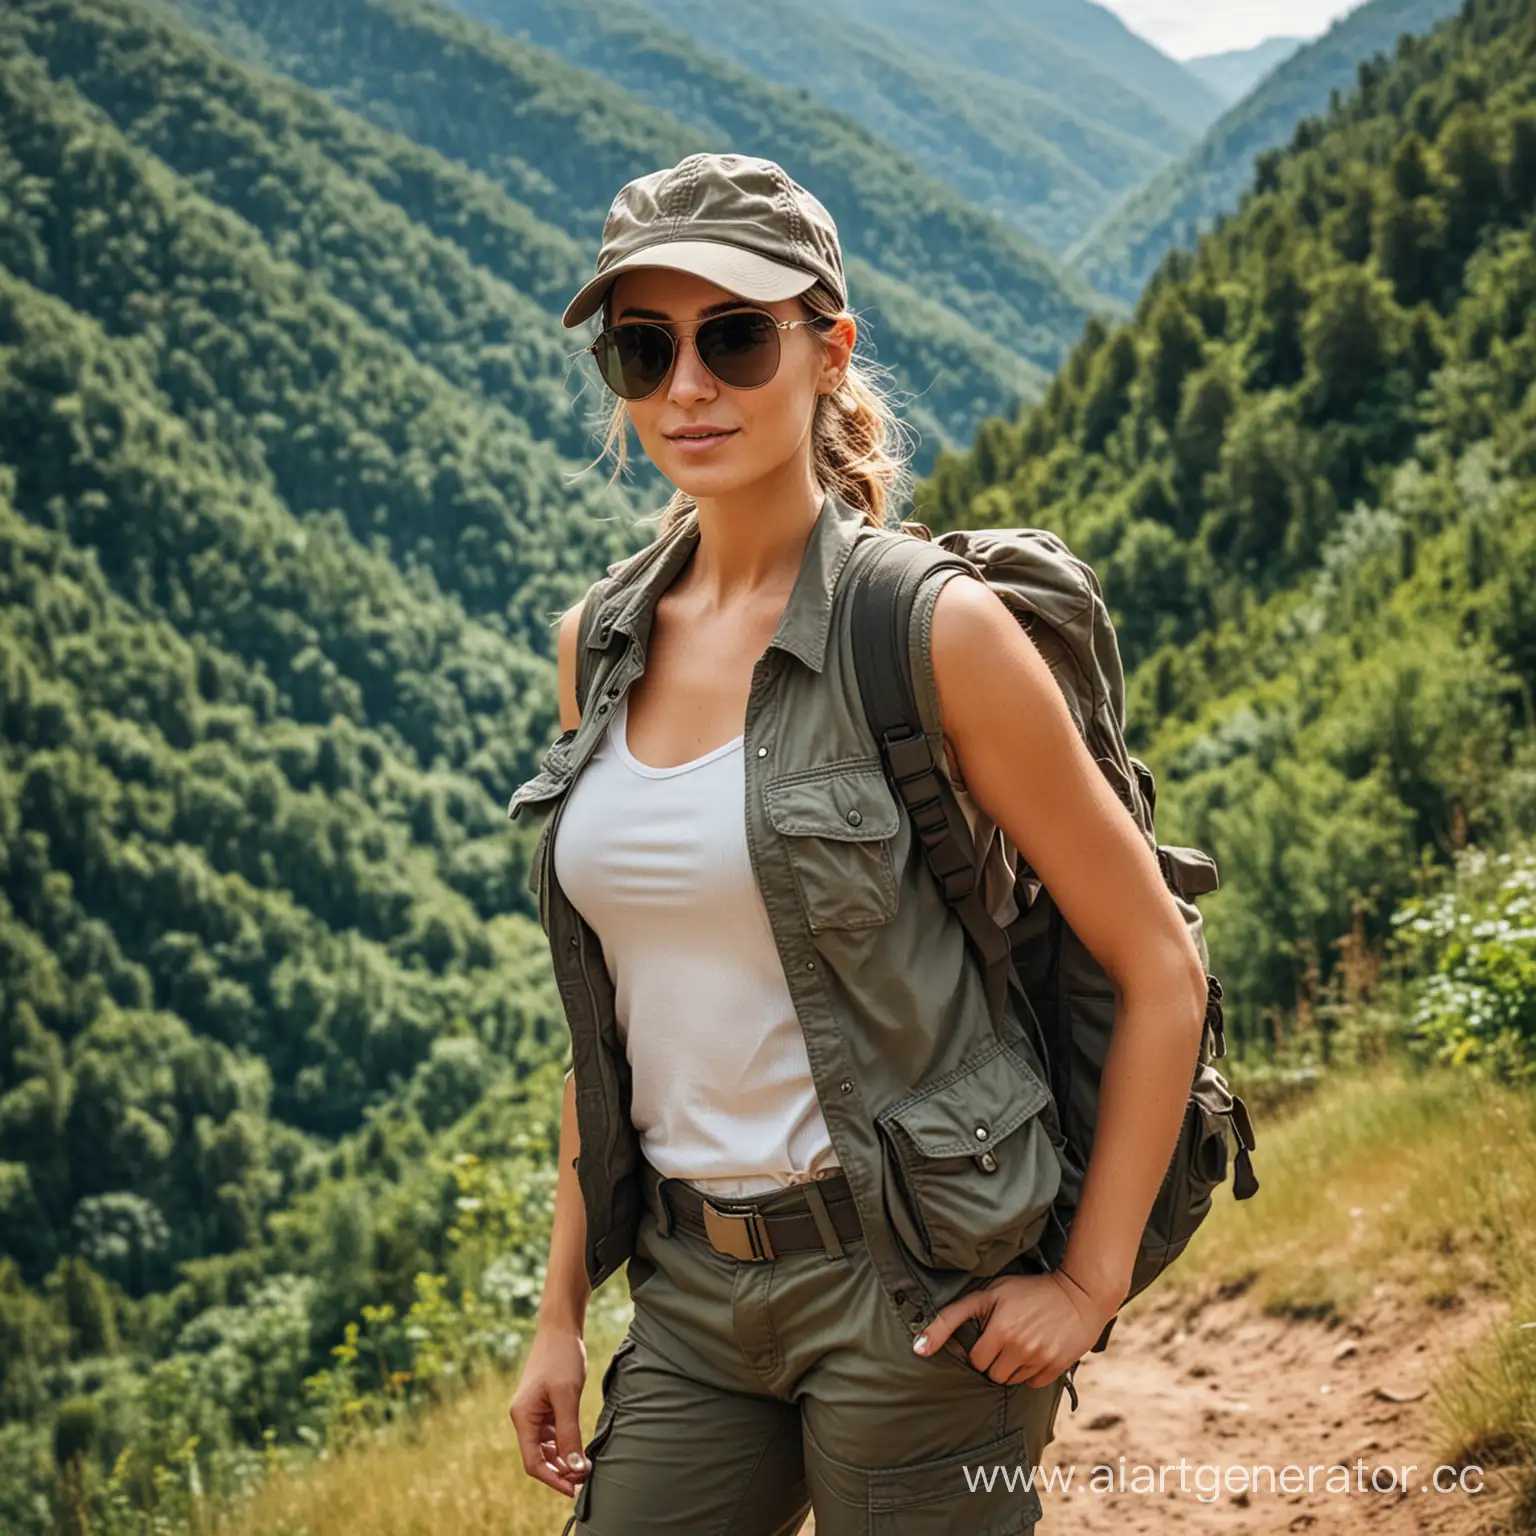 красивая женщина турист путешественница, темные очки, на голове бейсболка, в брюках карго, с рюкзаком за спиной, на фоне холмов покрытых лесом 